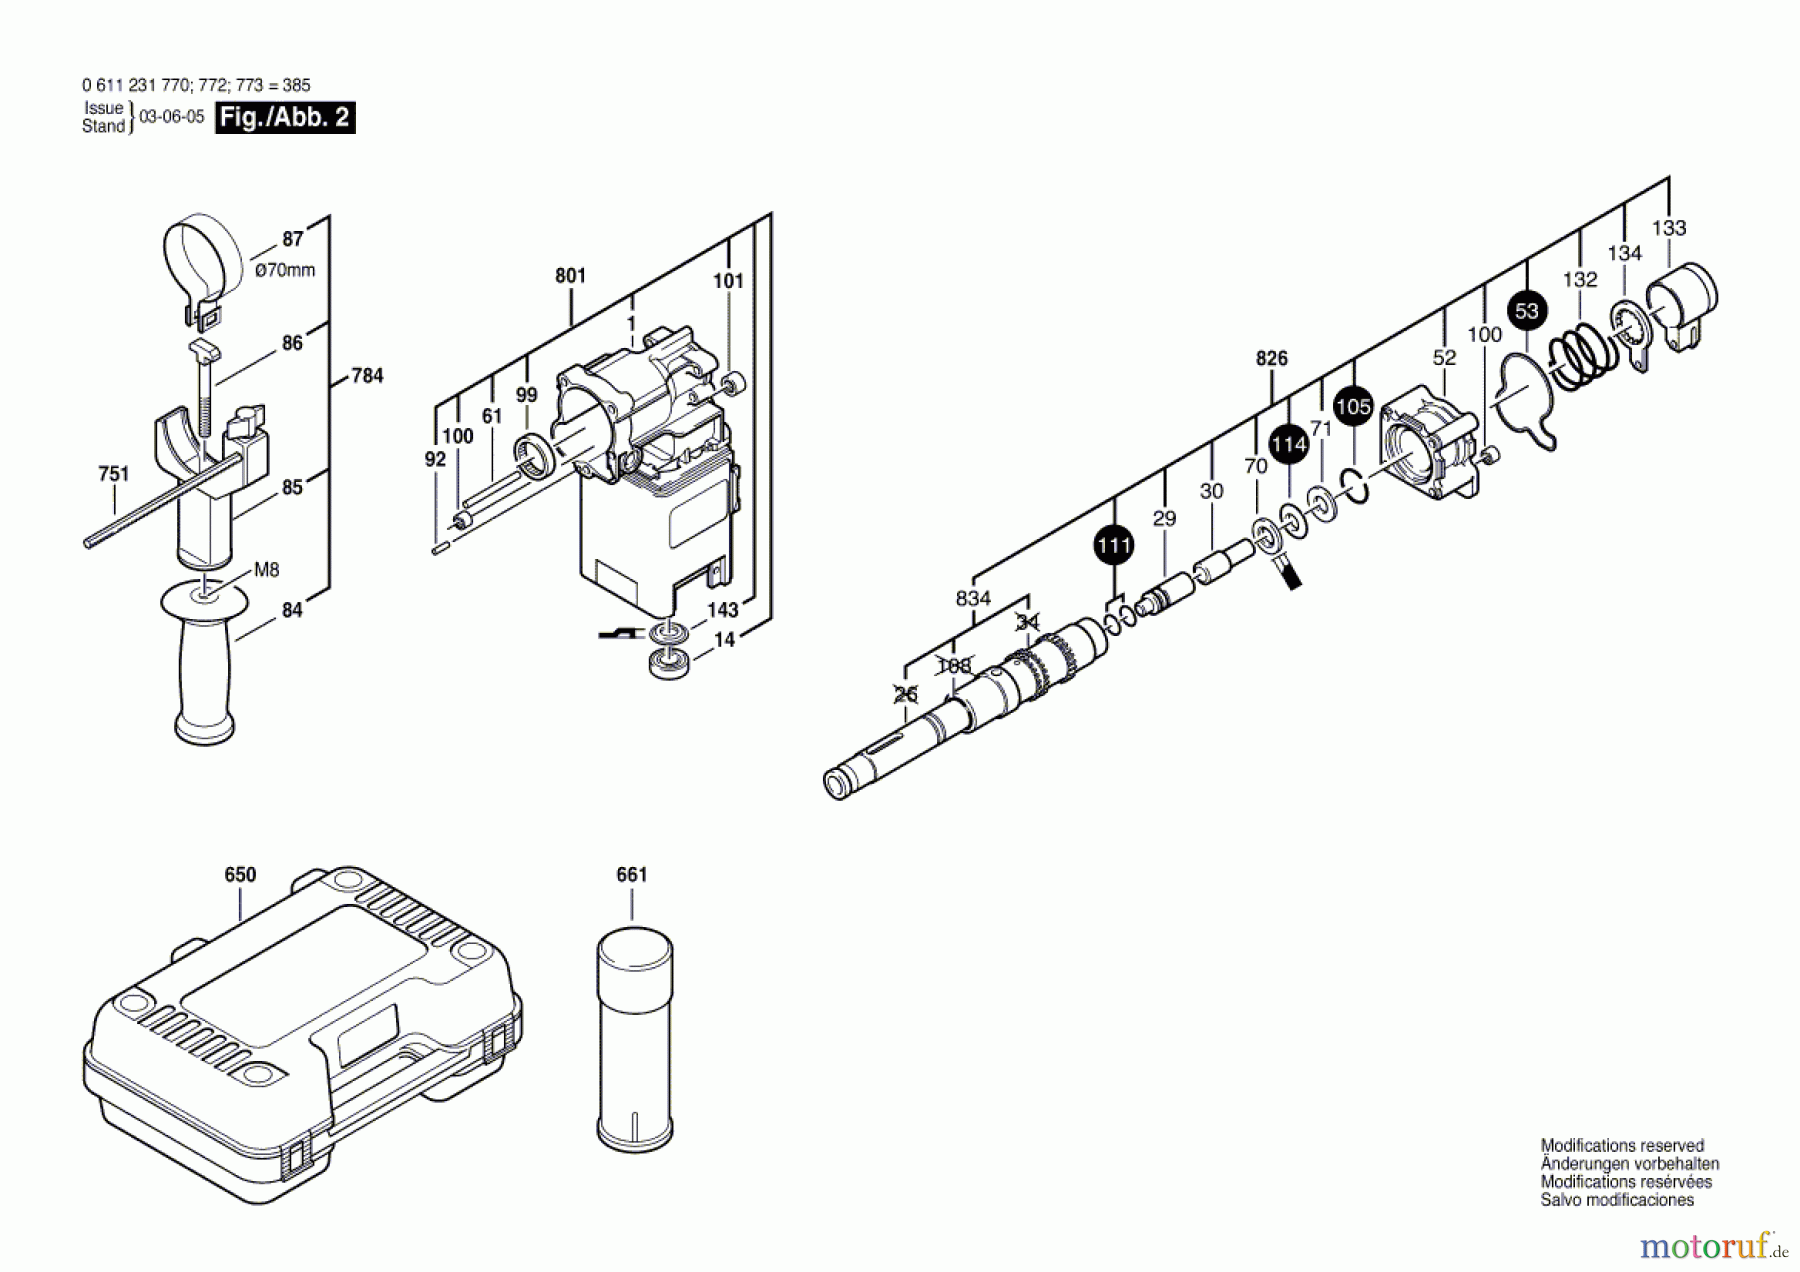  Bosch Werkzeug Bohrhammer 385 Seite 2